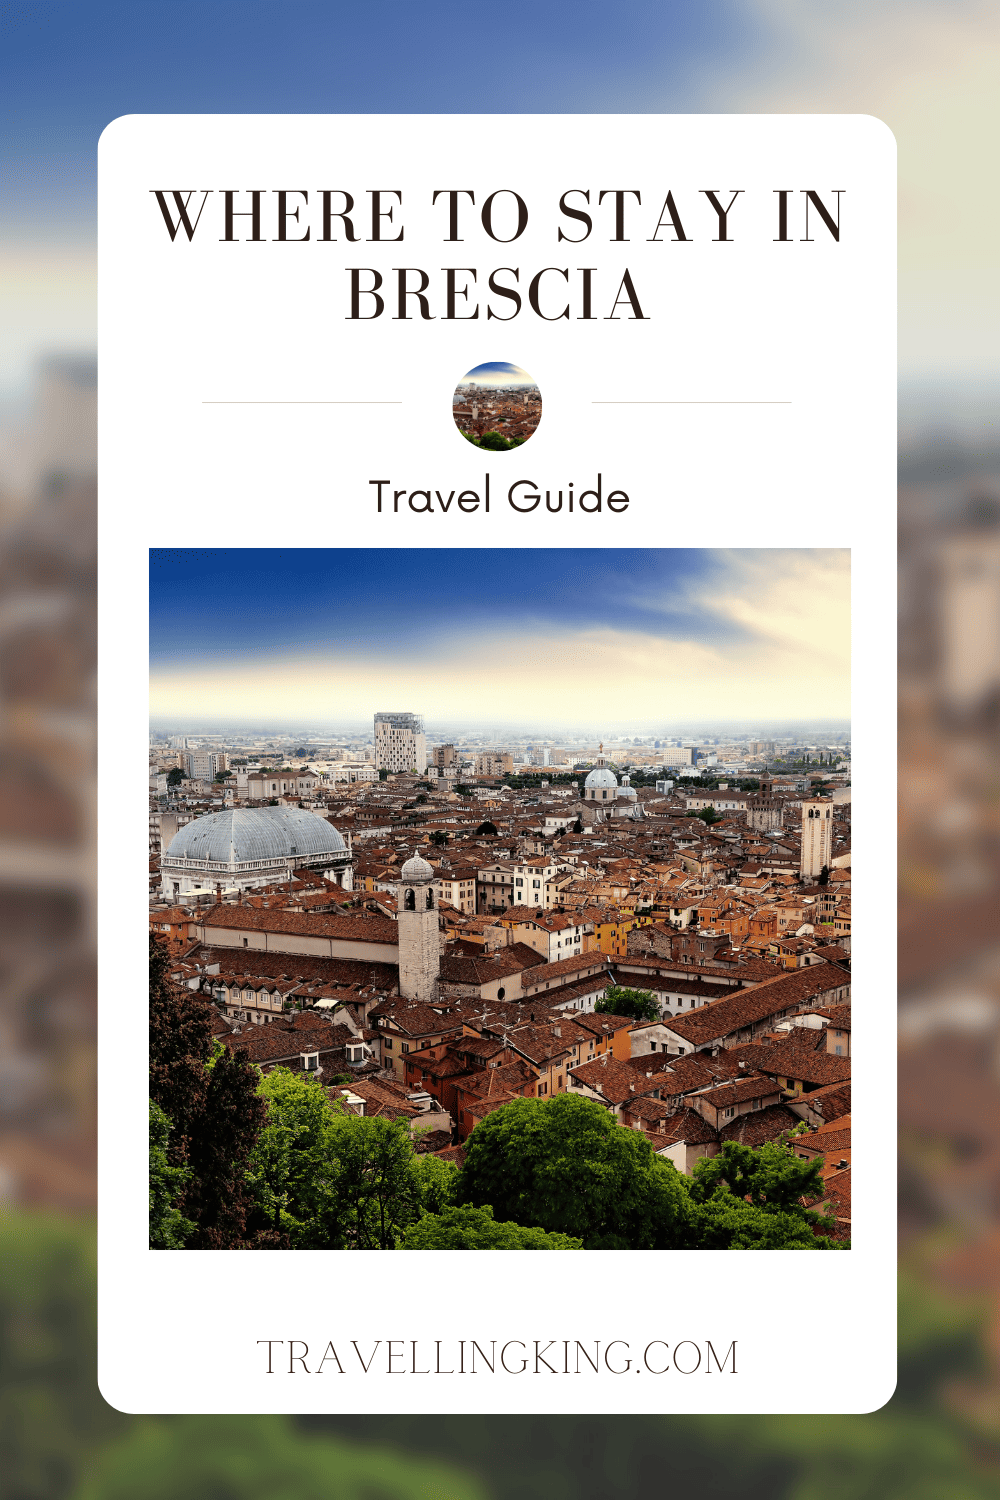 Where to Stay in Brescia